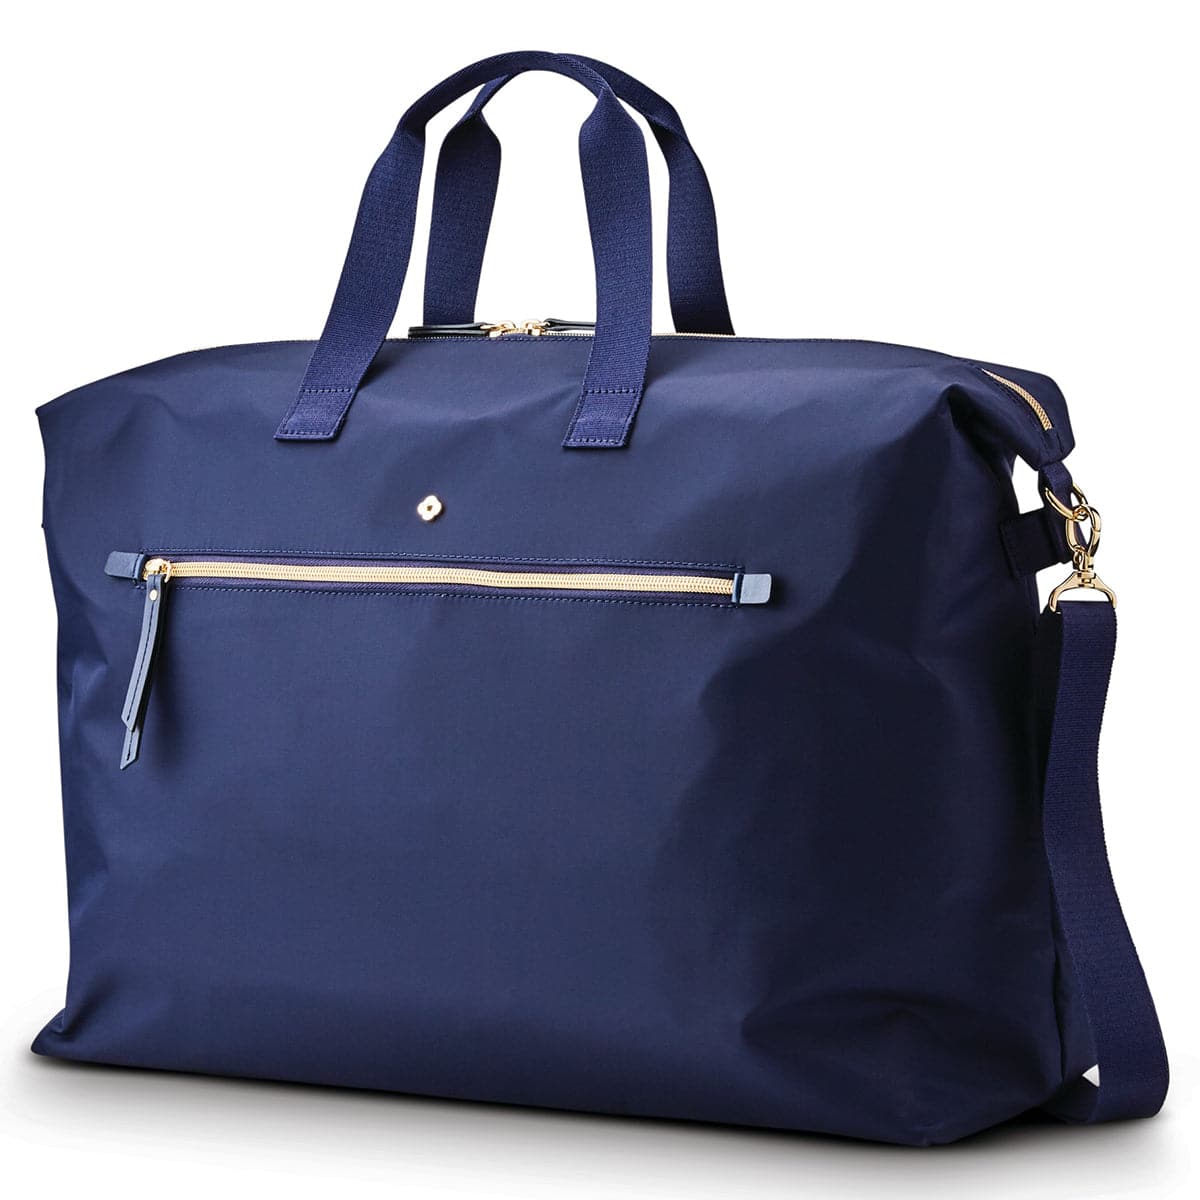 Samsonite Mobile Solution Classic Duffel Bag